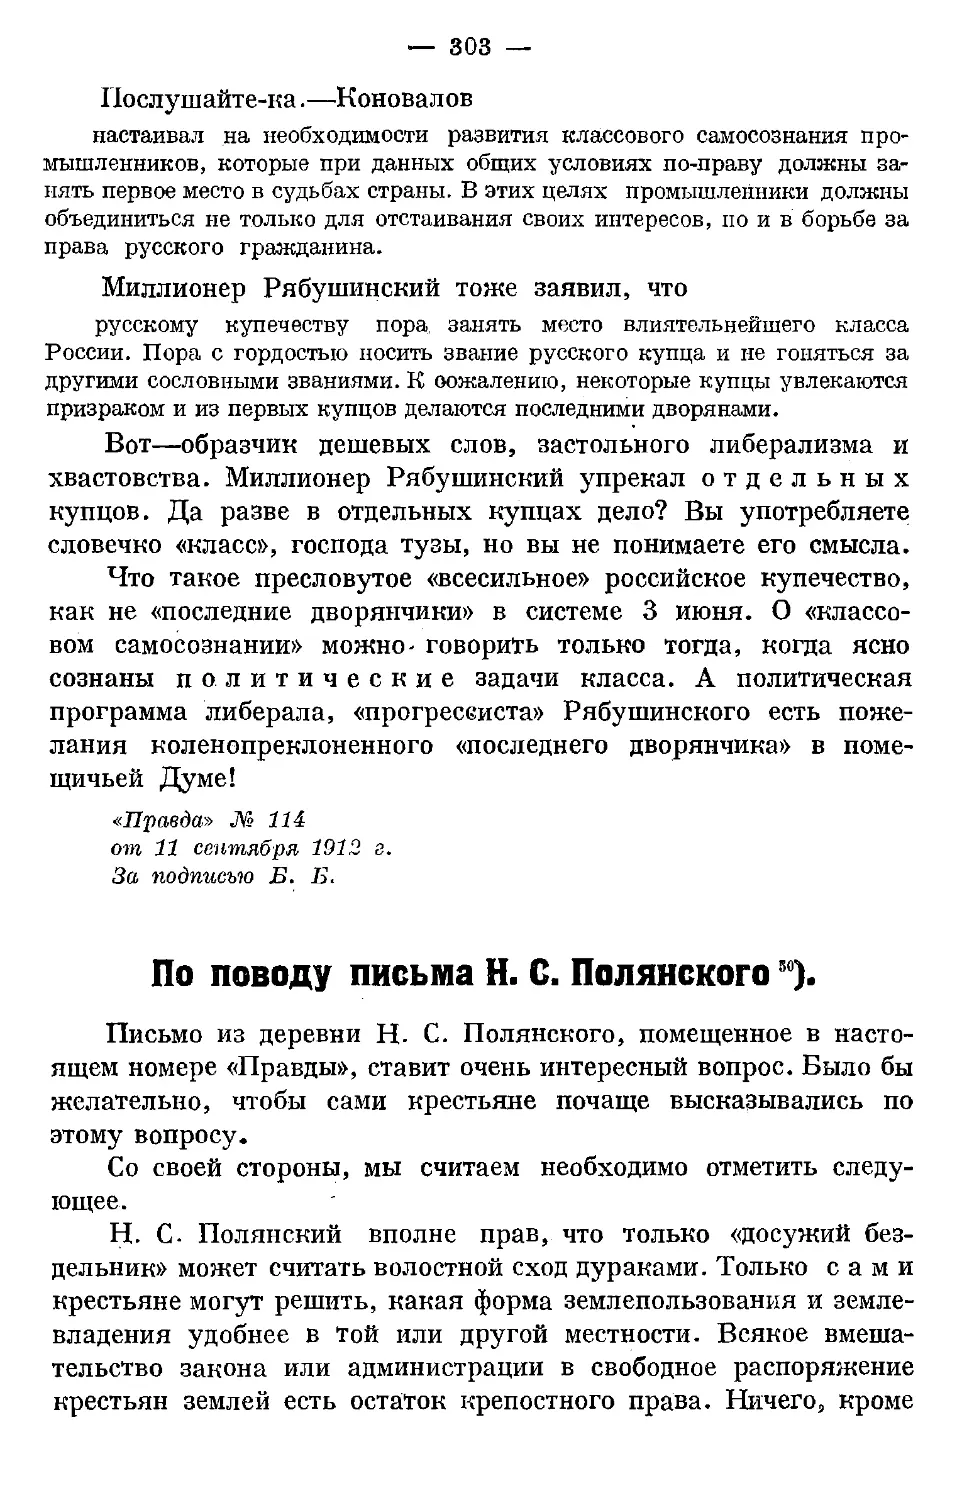 По поводу письма Н. С. Полянского. («Правда» № 118 от 15 сентября 1912 г.;